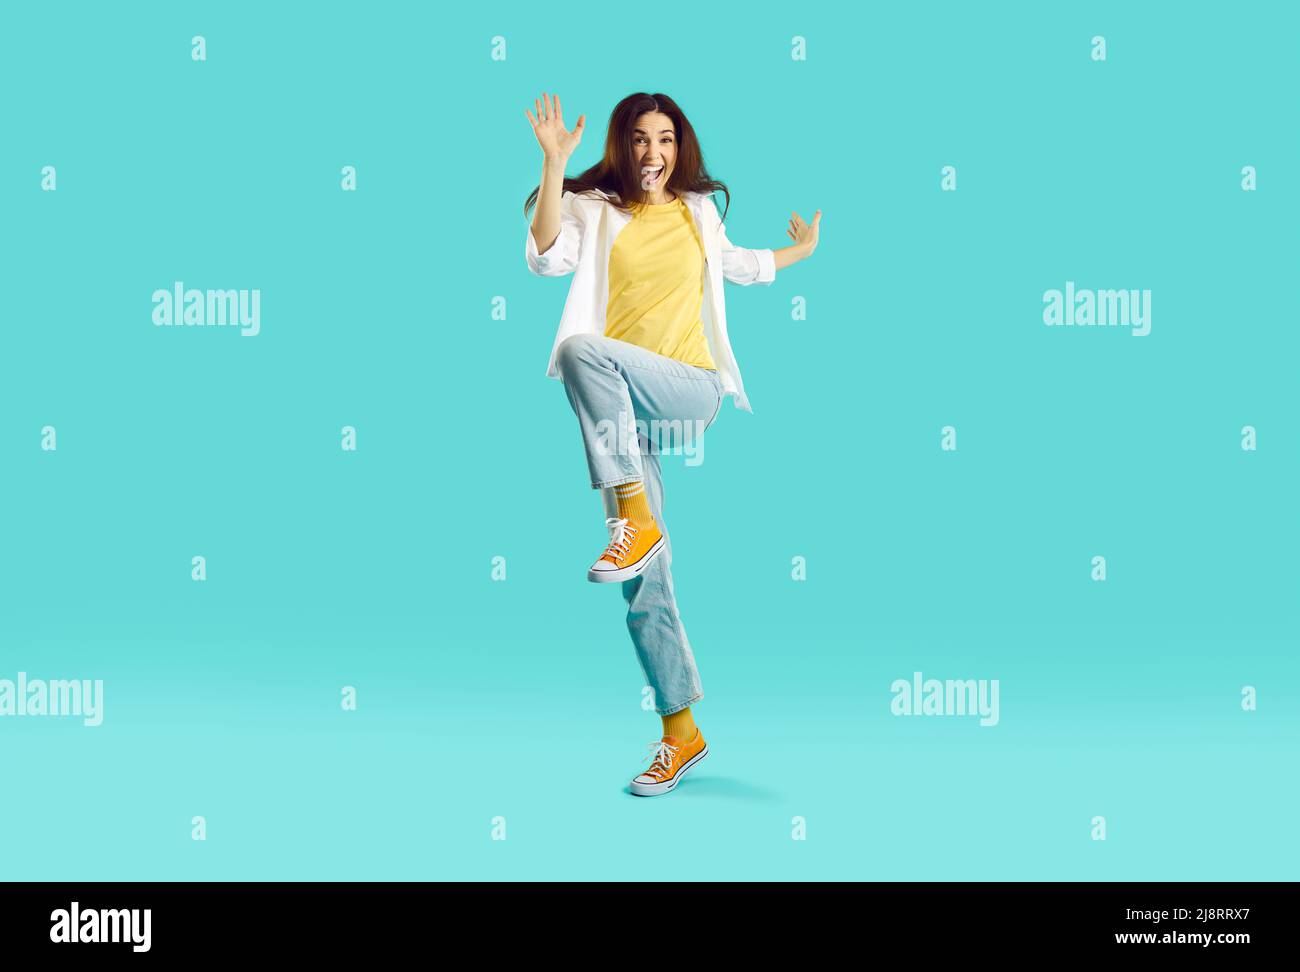 Imagen completa de una mujer joven con ropa elegante e informal saltando  divirtiéndose contra el fondo azul del estudio concepto de emociones  humanas anuncio de estilo de vida de moda juvenil